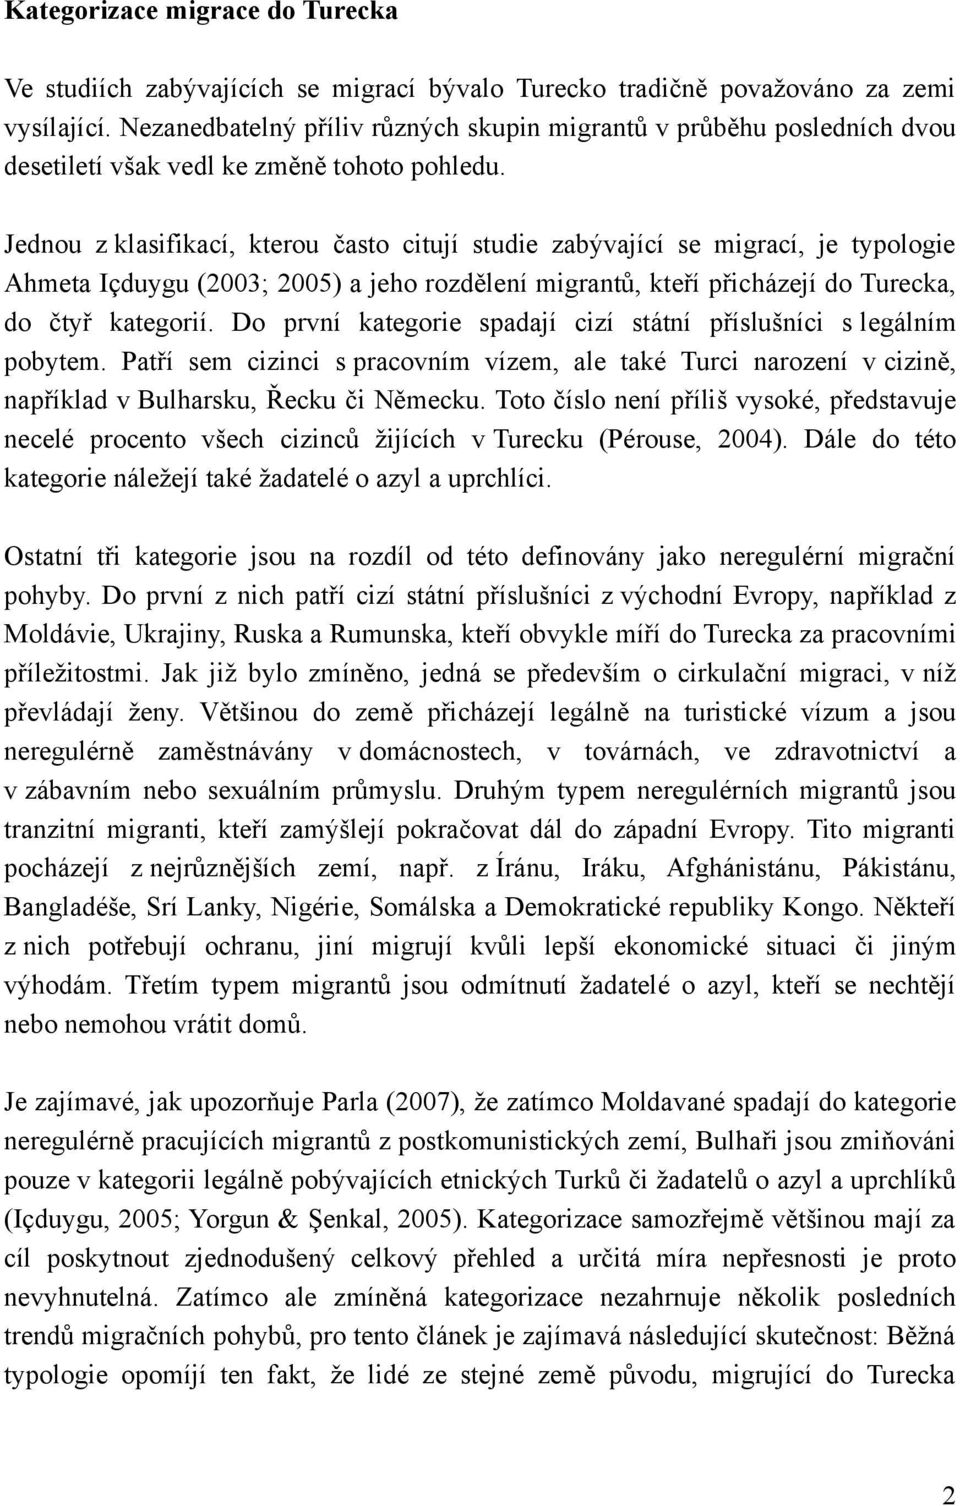 Jednou z klasifikací, kterou často citují studie zabývající se migrací, je typologie Ahmeta Içduygu (2003; 2005) a jeho rozdělení migrantů, kteří přicházejí do Turecka, do čtyř kategorií.